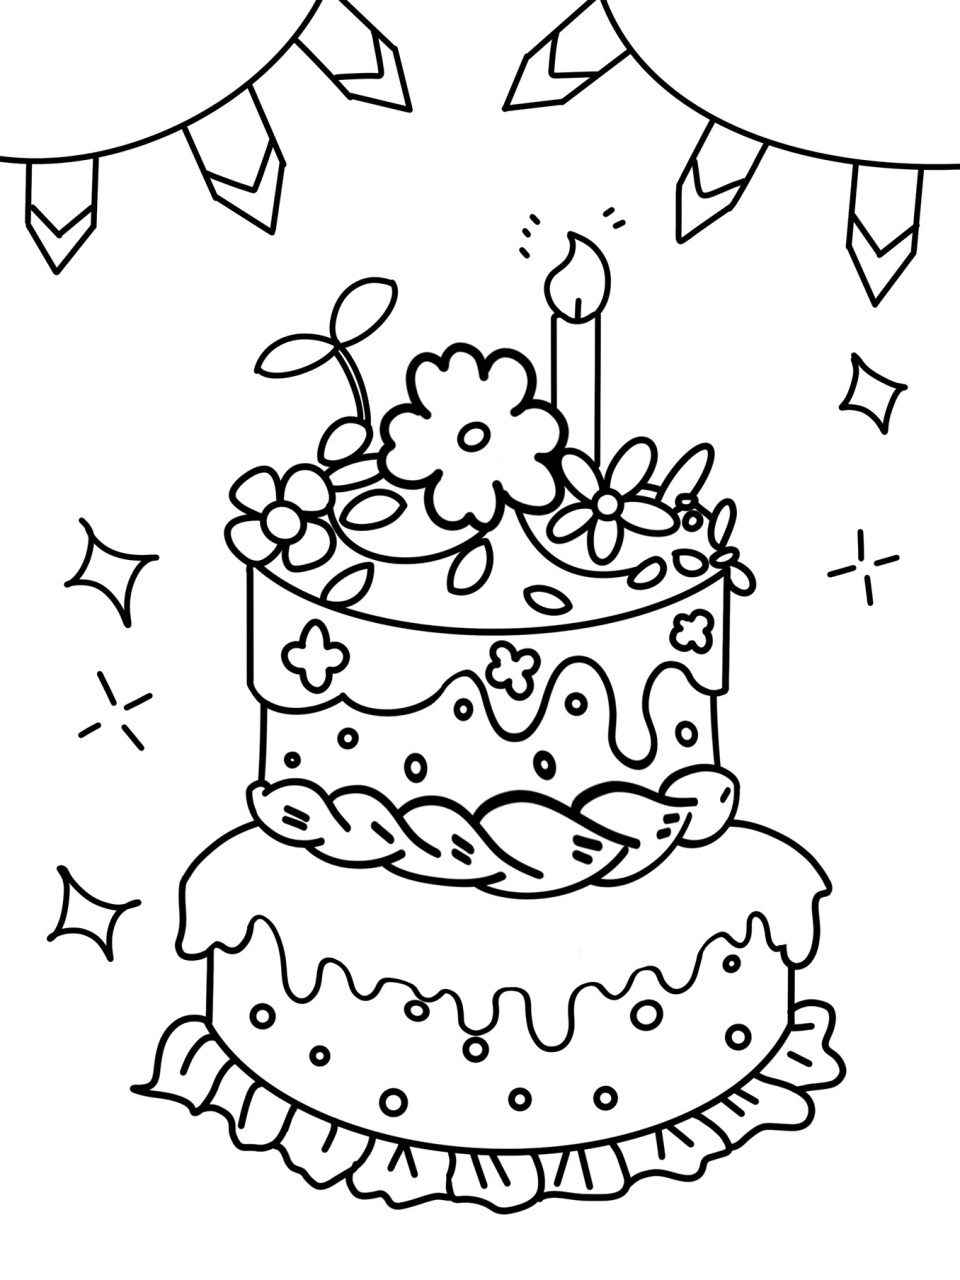 生日蛋糕简笔画幼儿图片